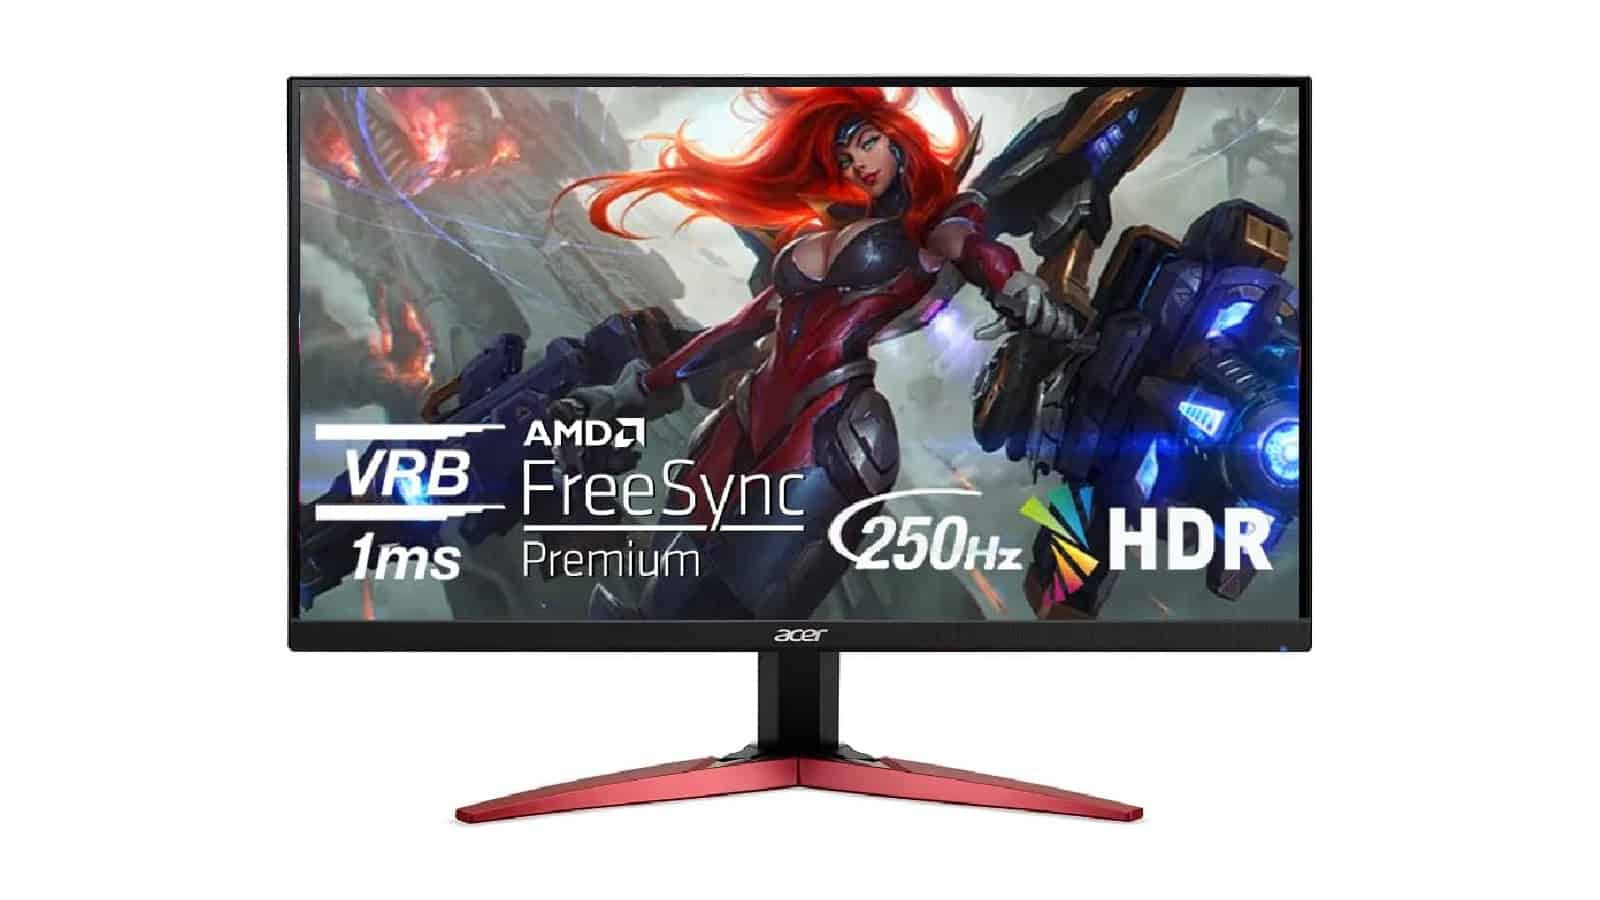 Ahorre $50 y obtenga este monitor para juegos Acer de 250 Hz por $150